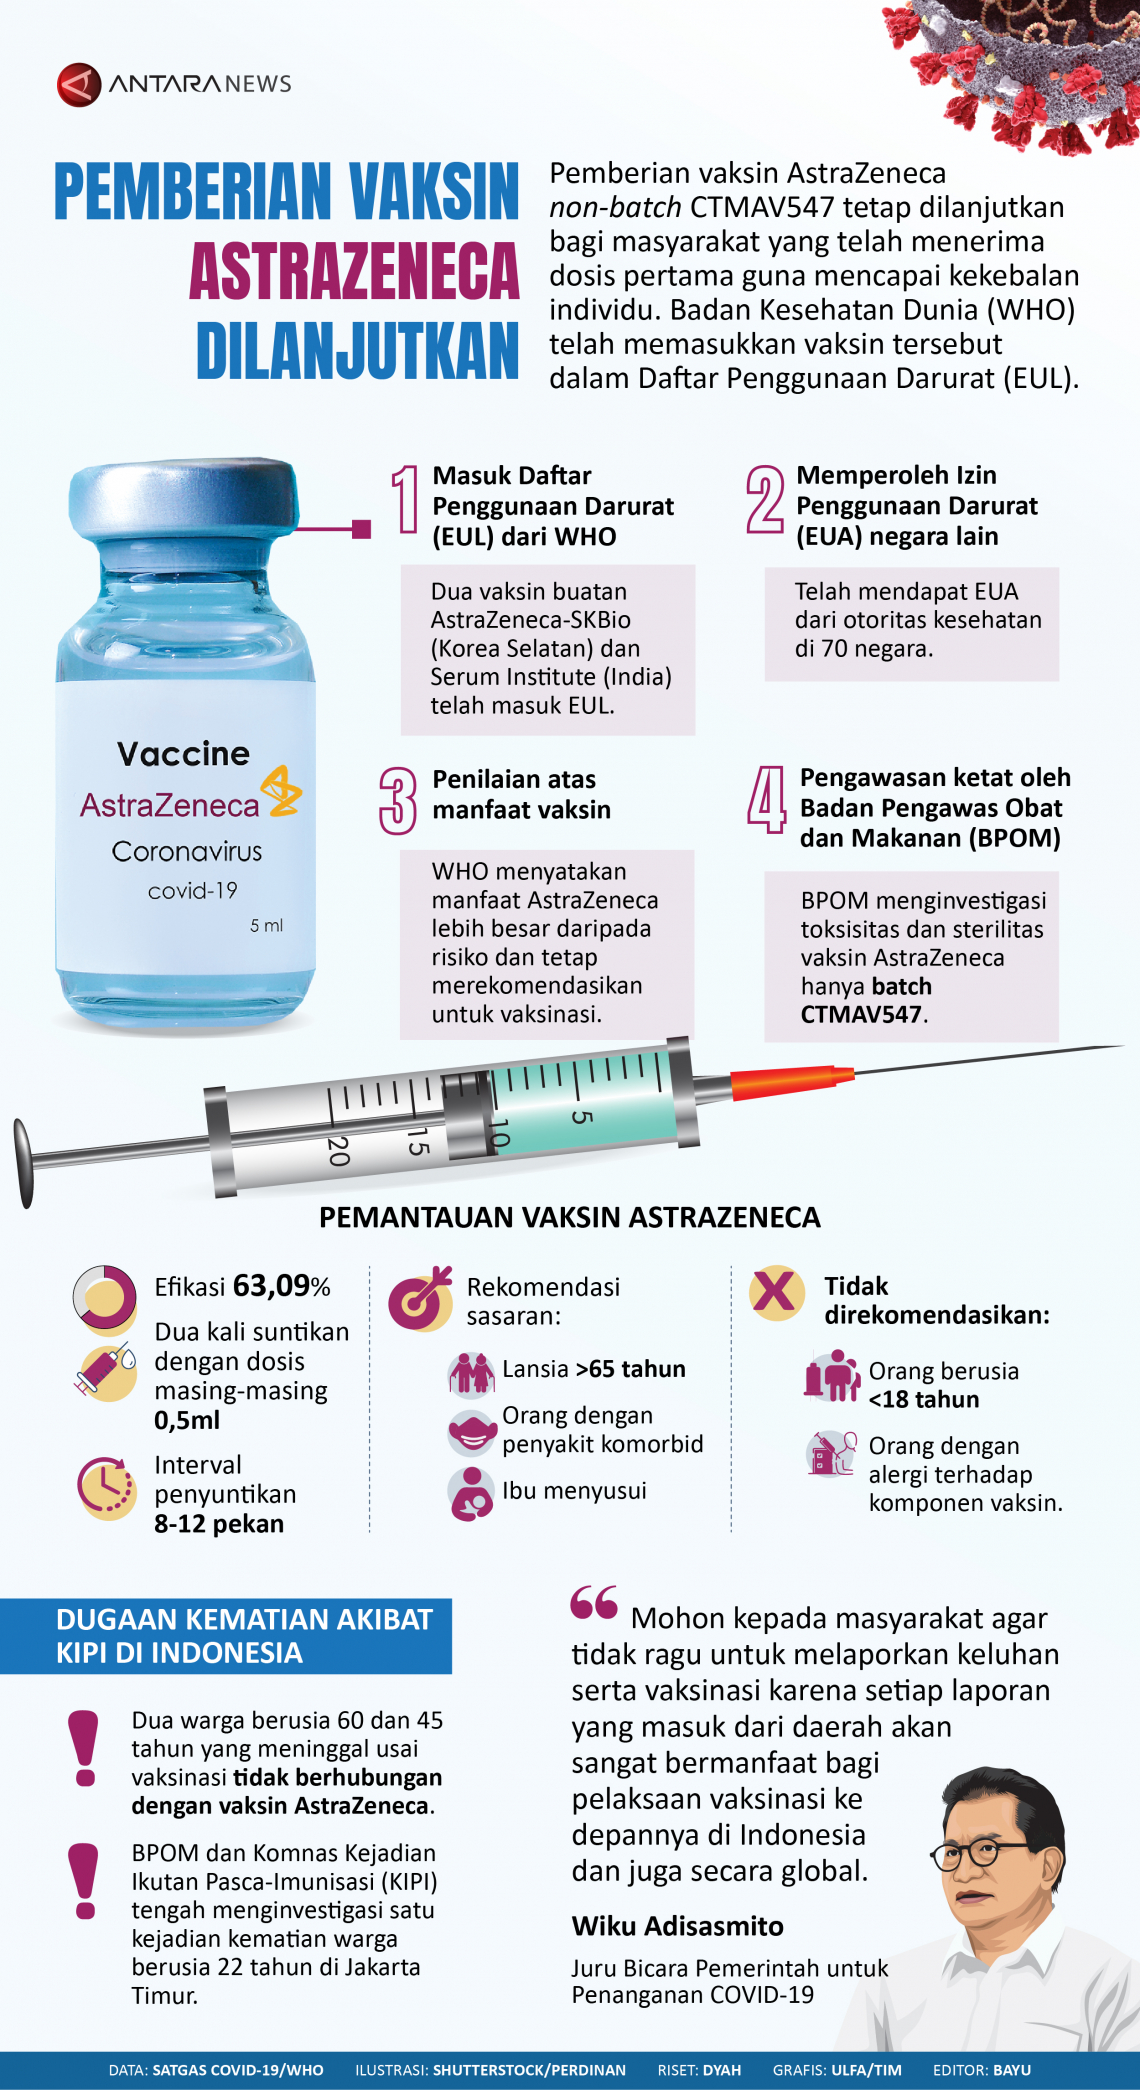 Lokasi vaksin astrazeneca terdekat